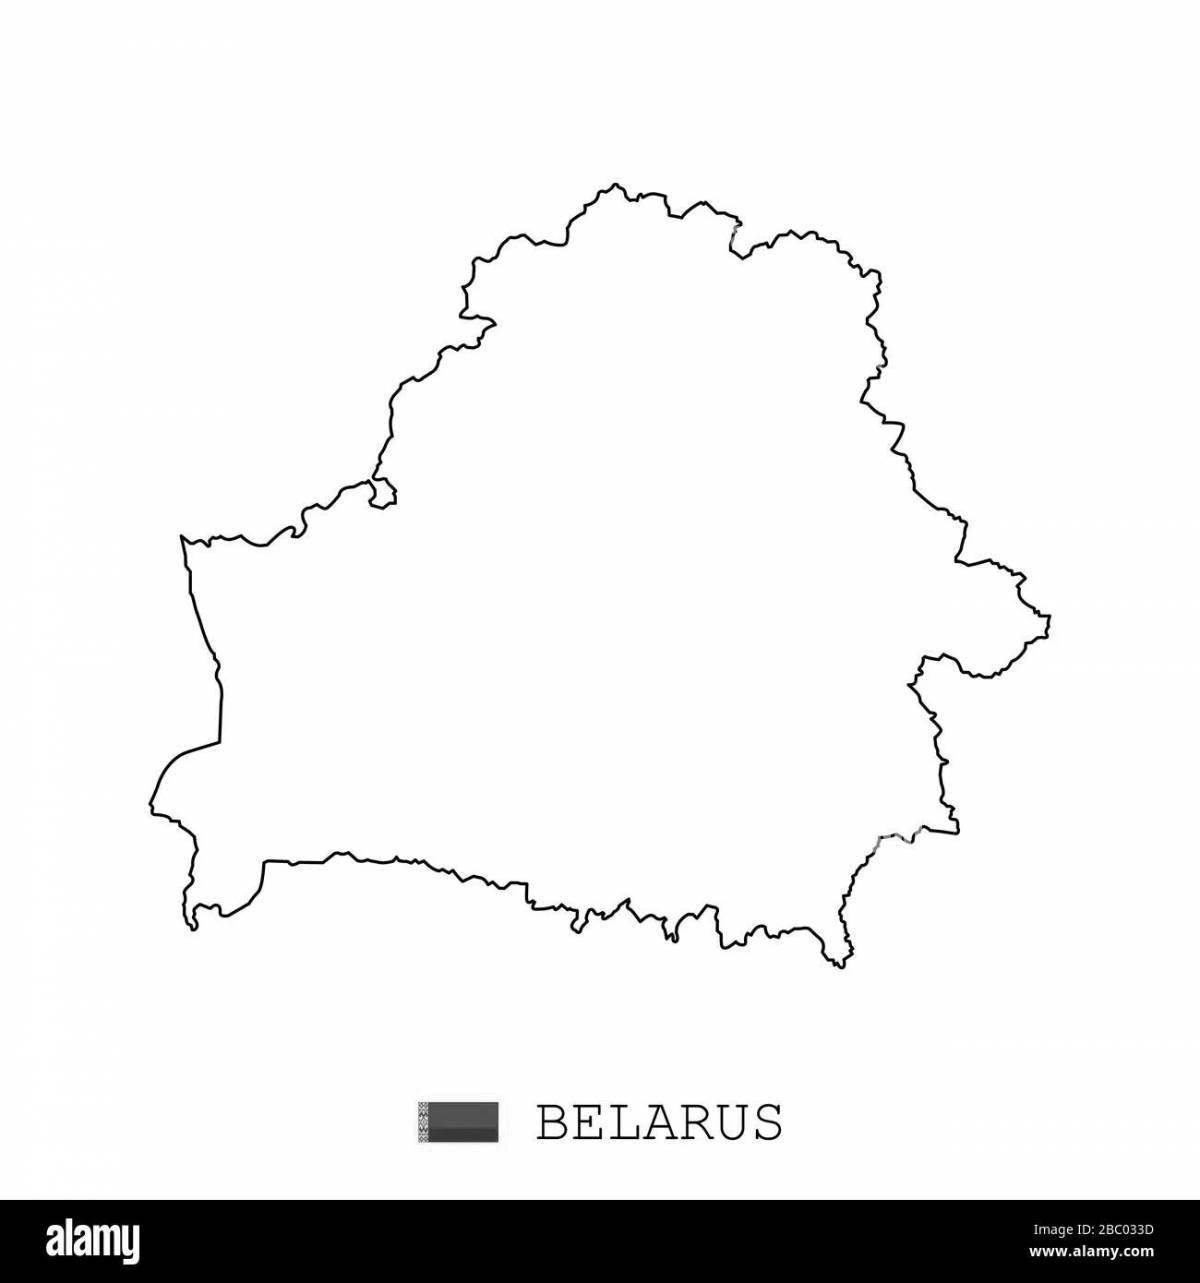 Увлекательная раскраска карты беларуси для самых маленьких